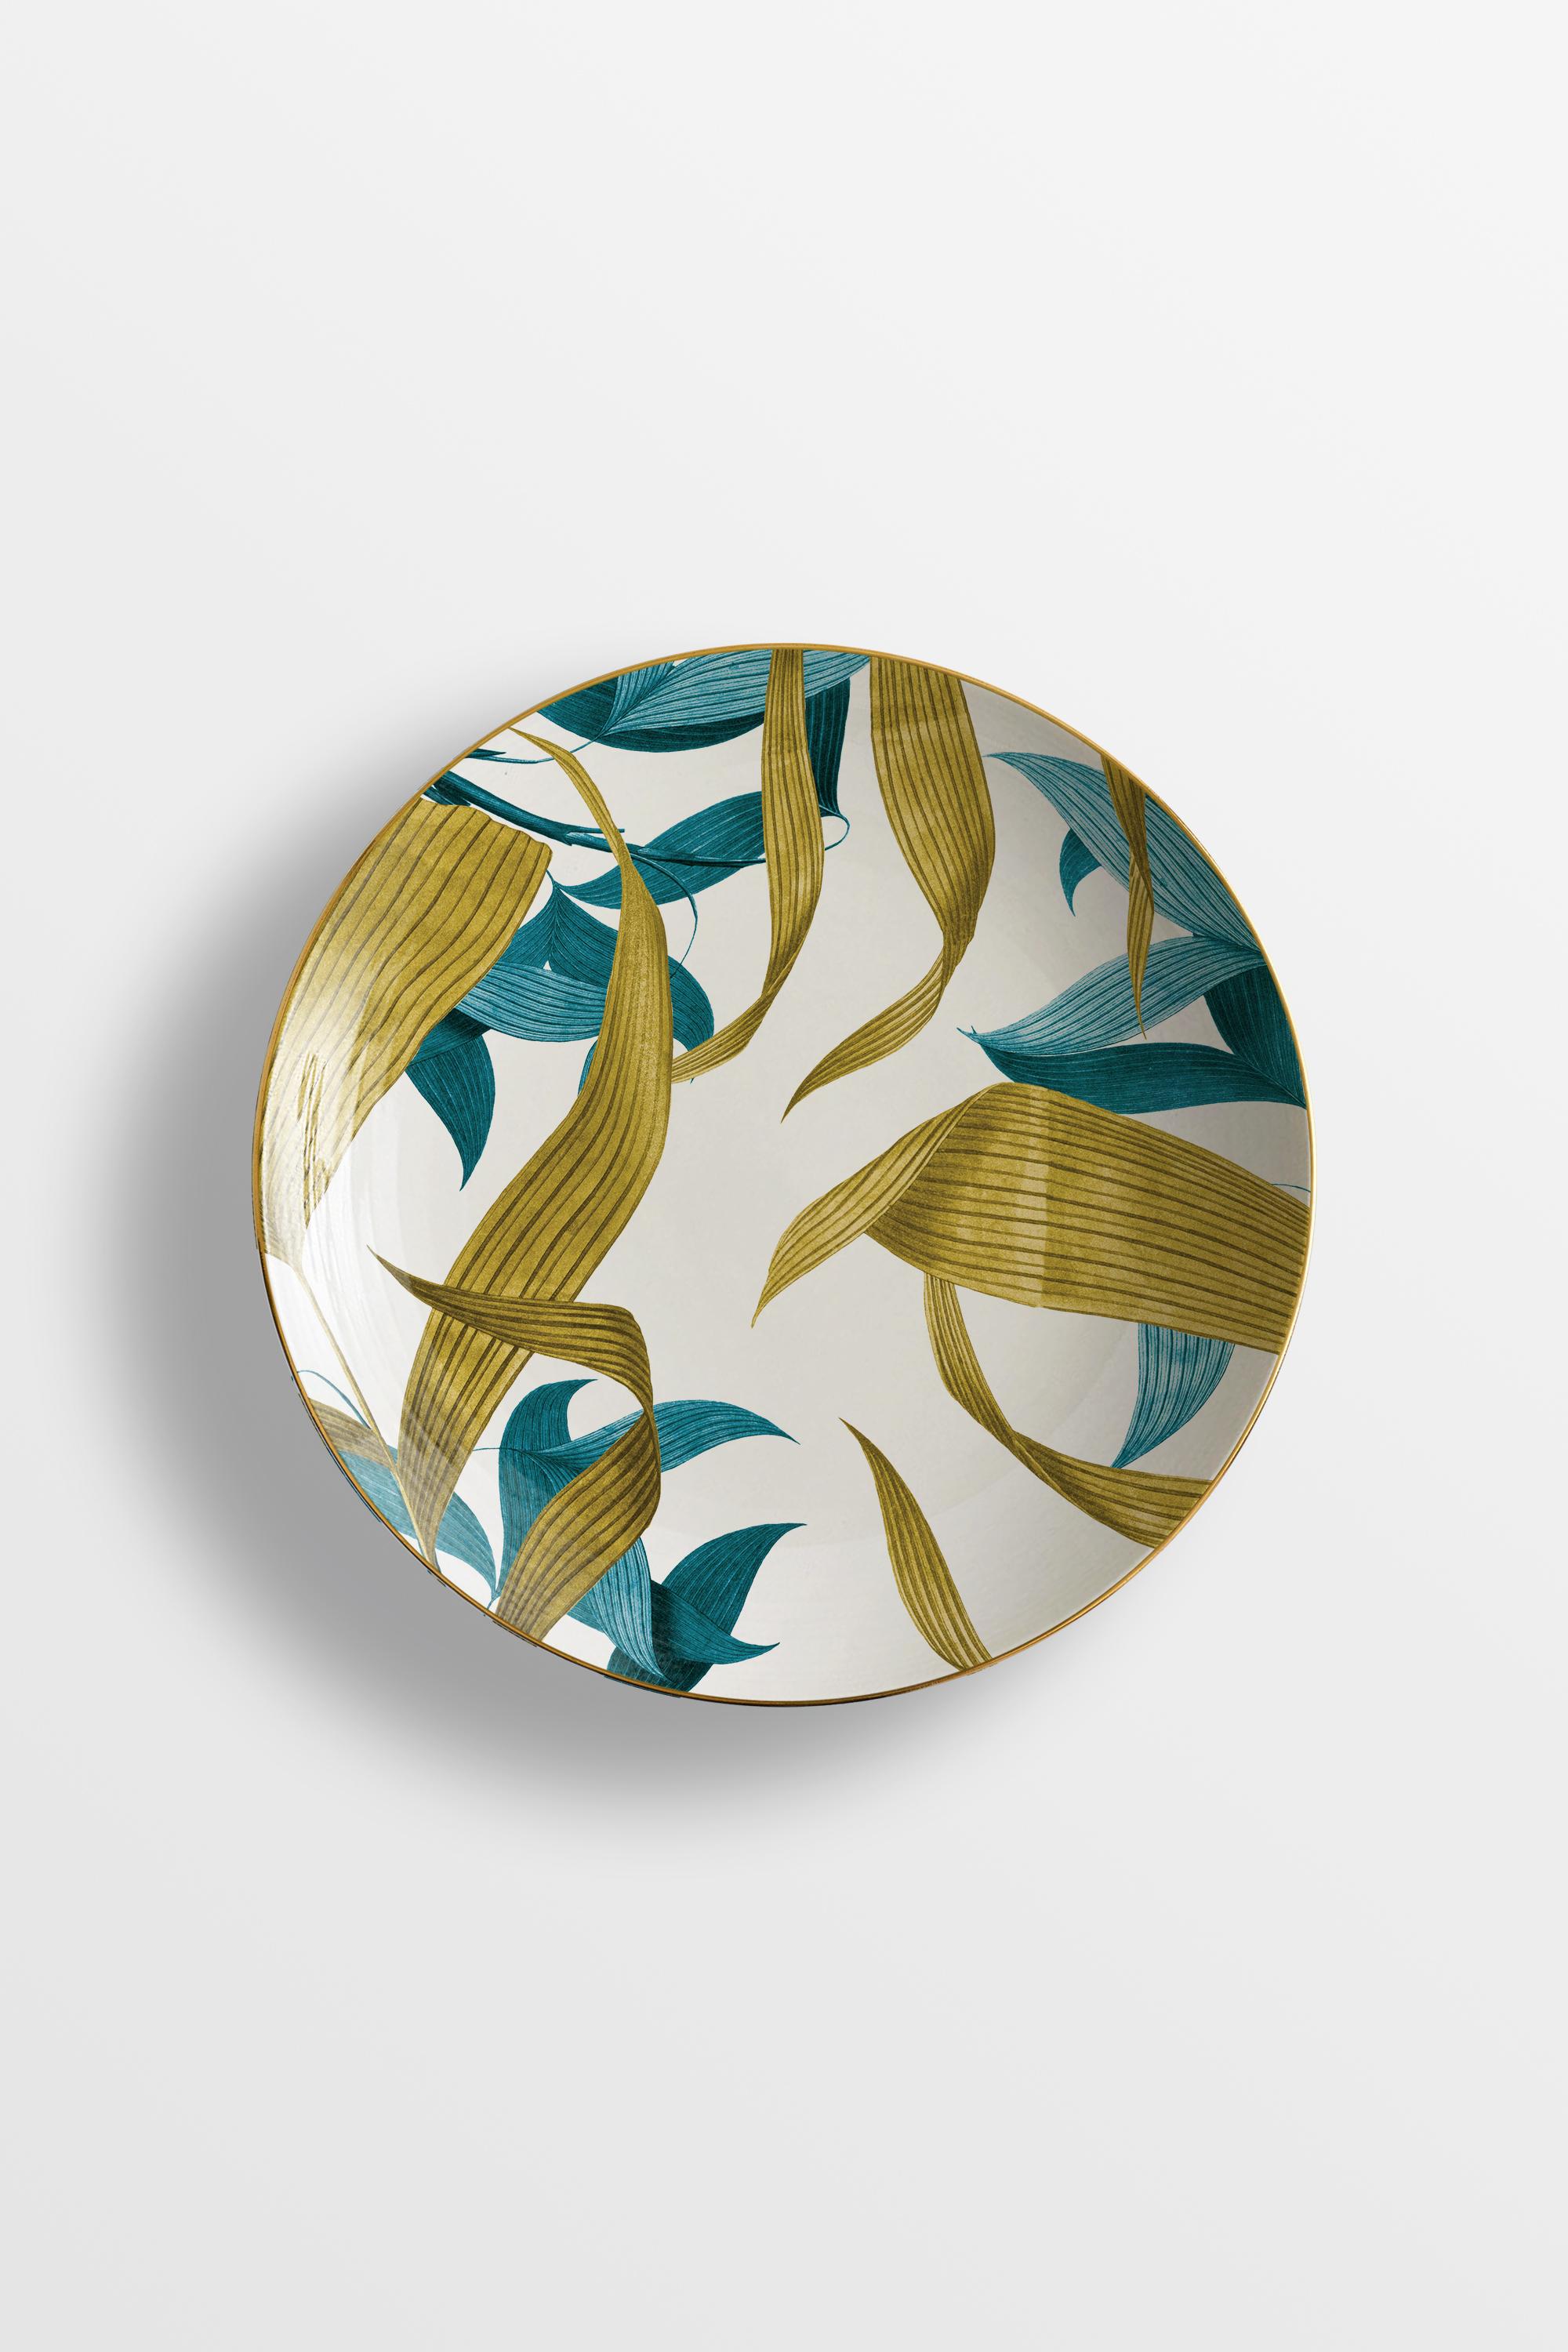 Italian Las Palmas, Six Contemporary Porcelain soup plates with Decorative Design For Sale